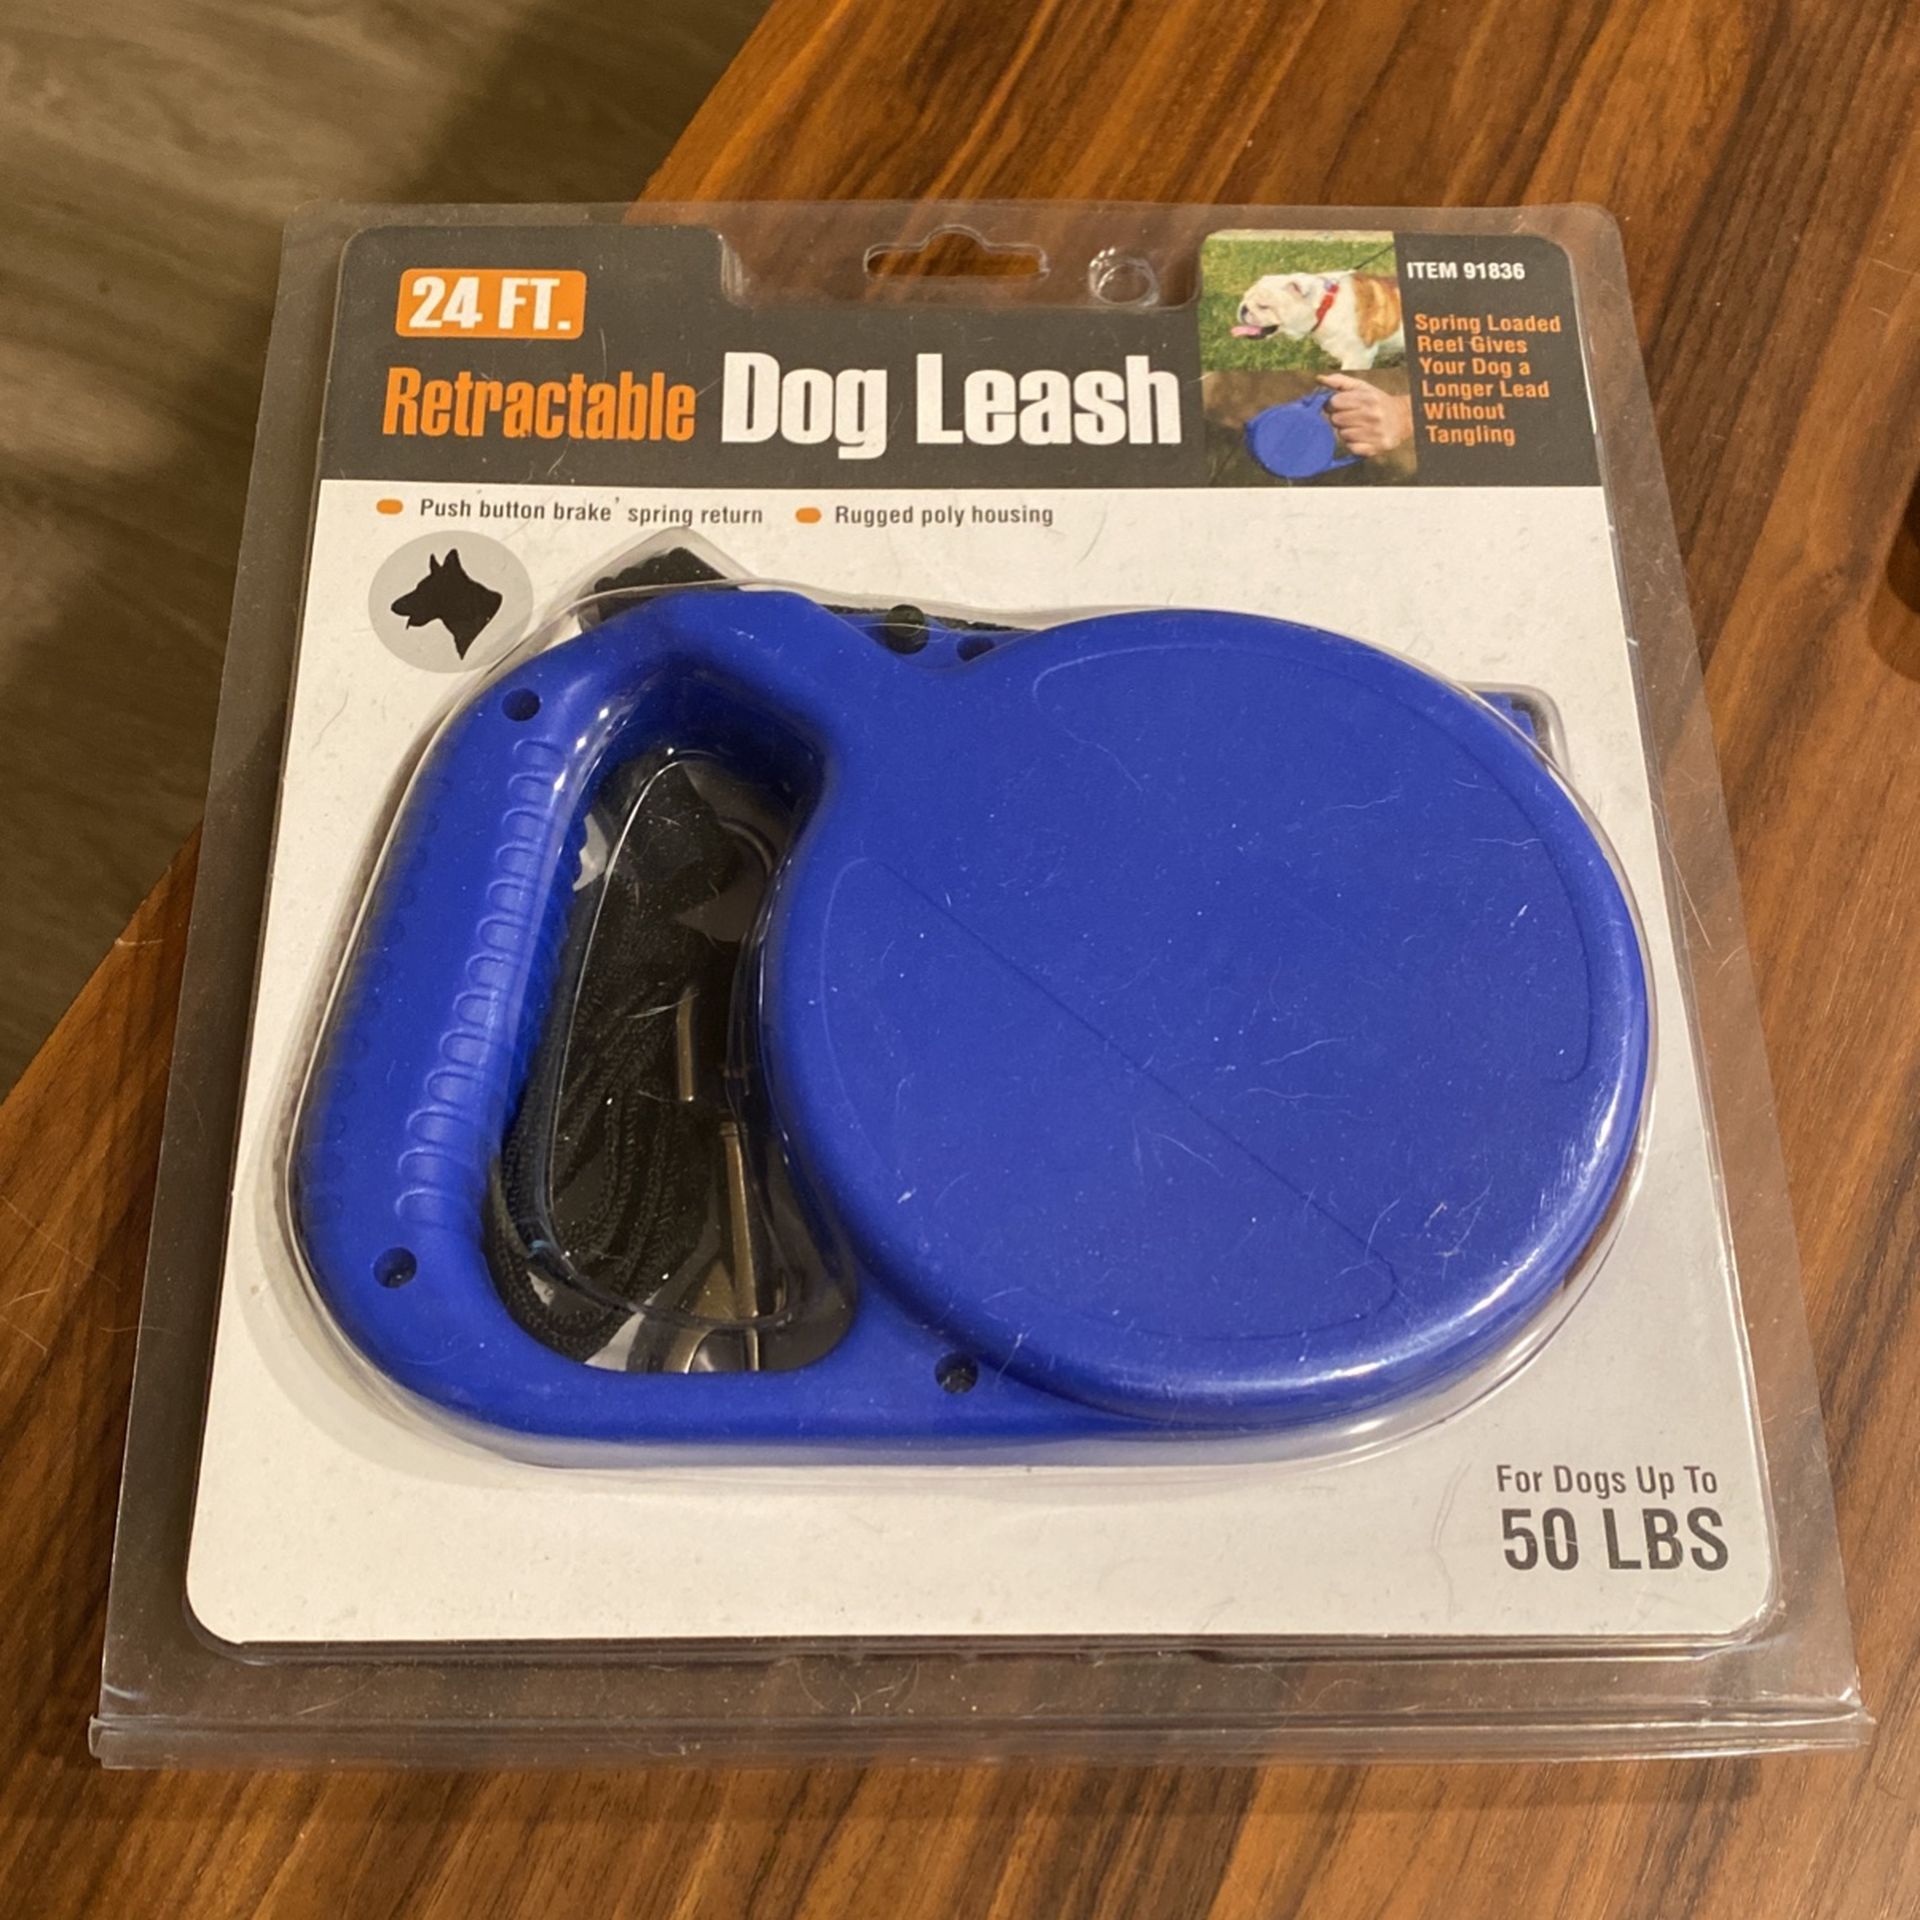 Retractable Dog Leash